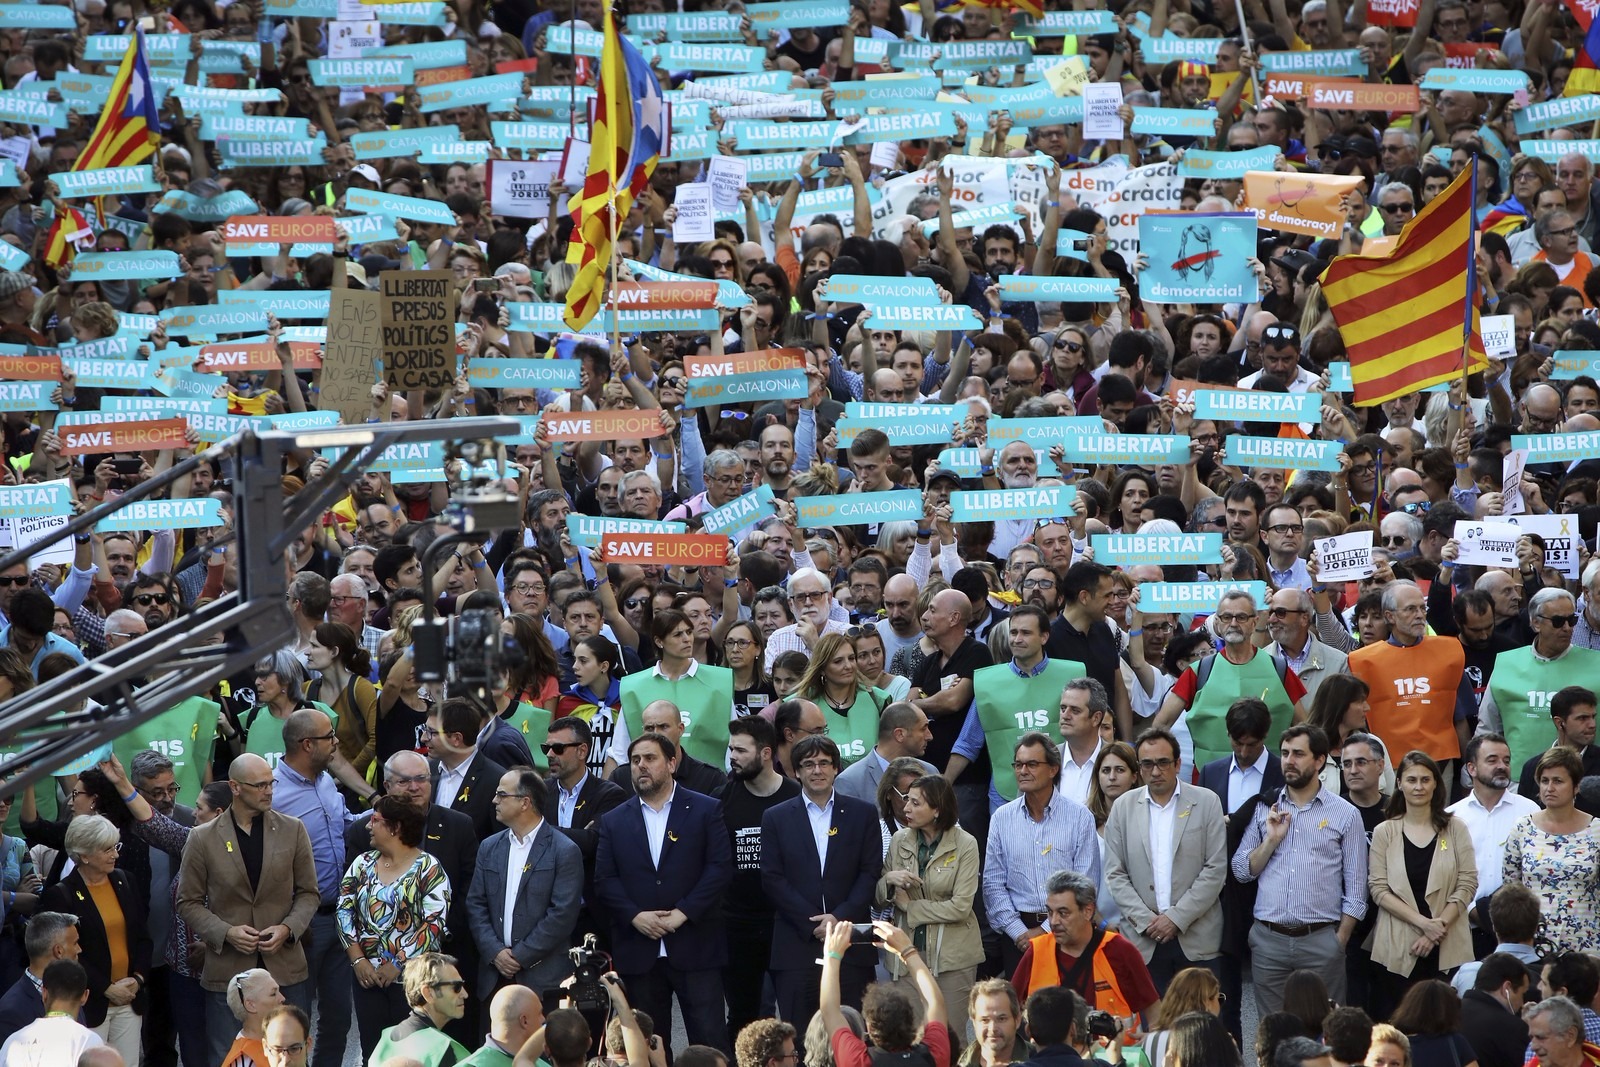 Manifestantes protestam após decisão do governo da Espanha para restabelecer a ordem constitucional na região. (Foto: AP Photo/Emilio Morenatti)